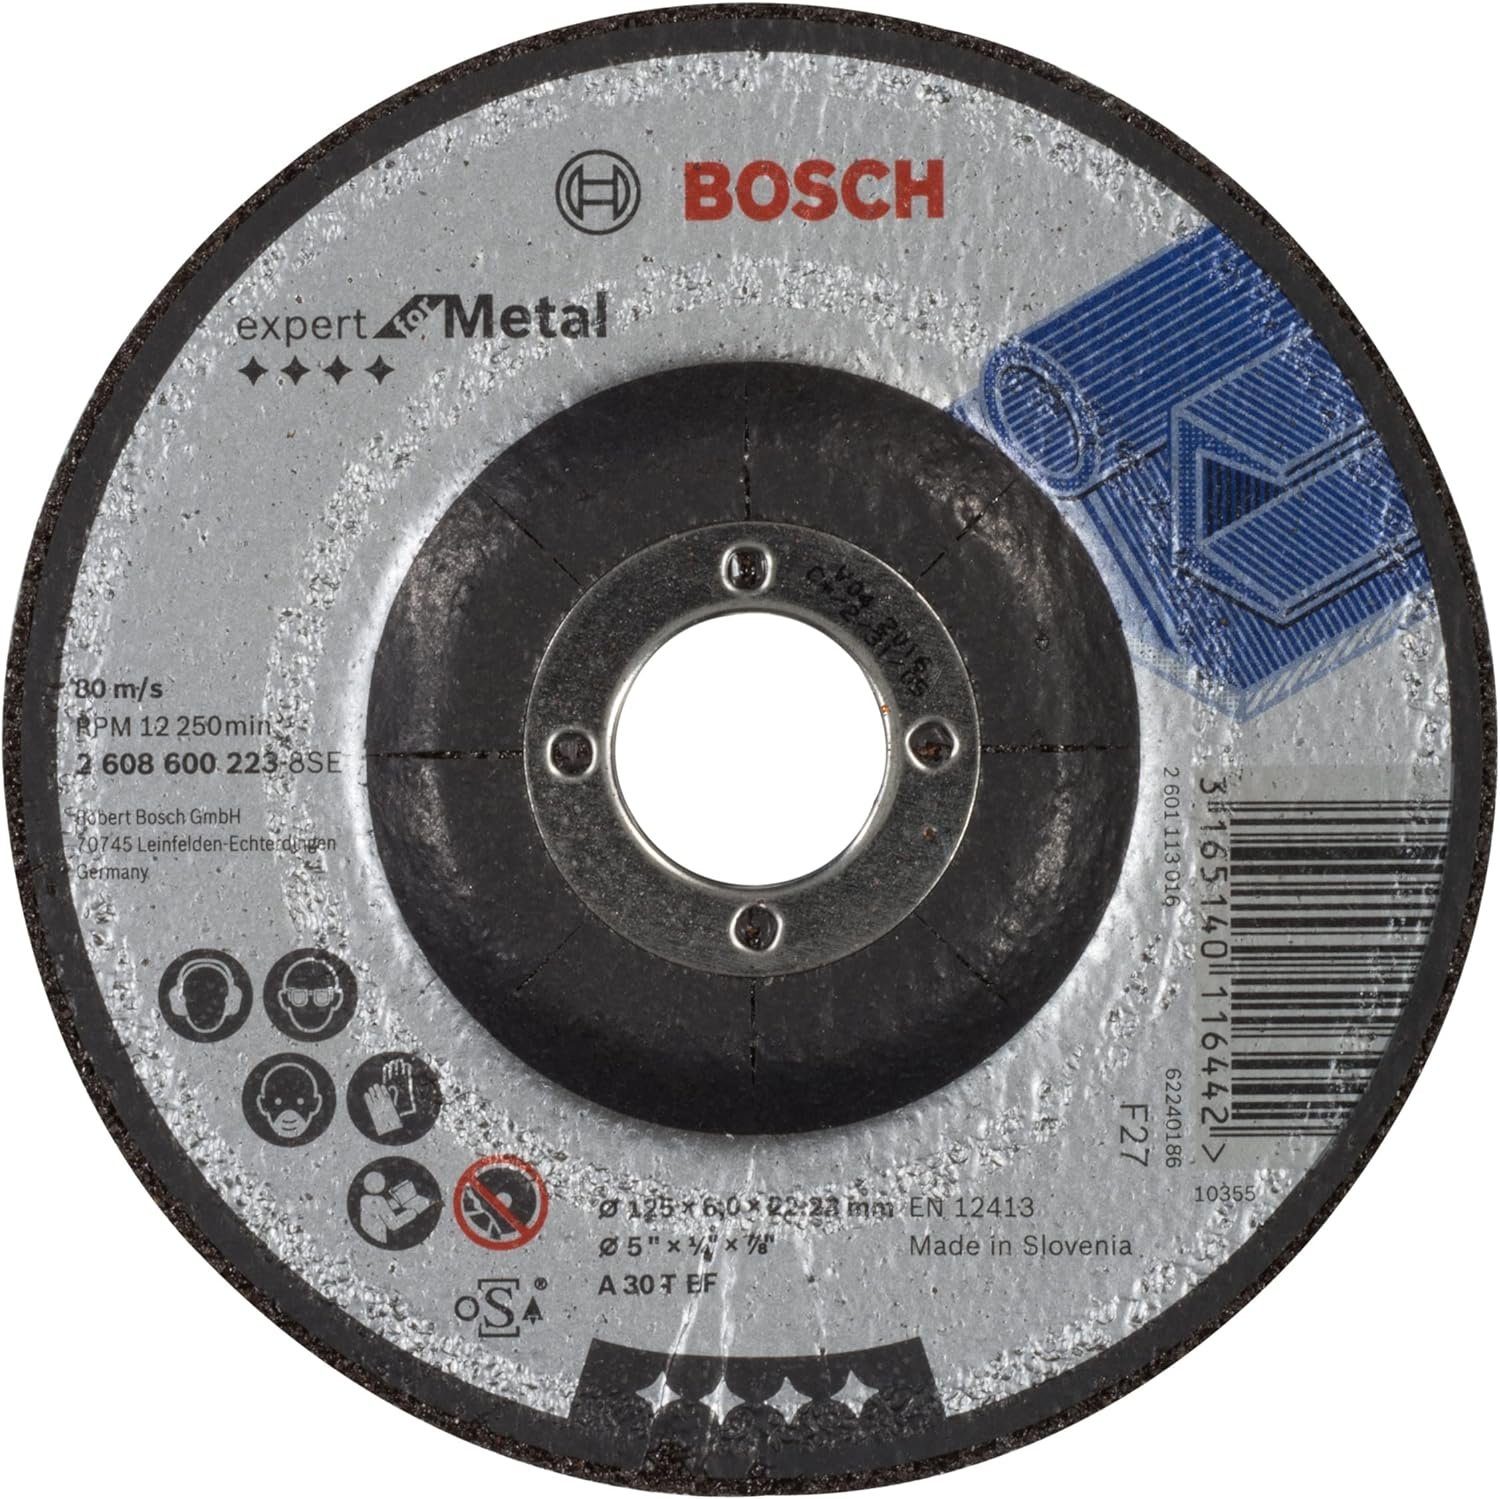 BOSCH Bohrfutter Bosch Schruppscheibe A 30 T BF 125 mm 4mm gekröpft Expert for Metal